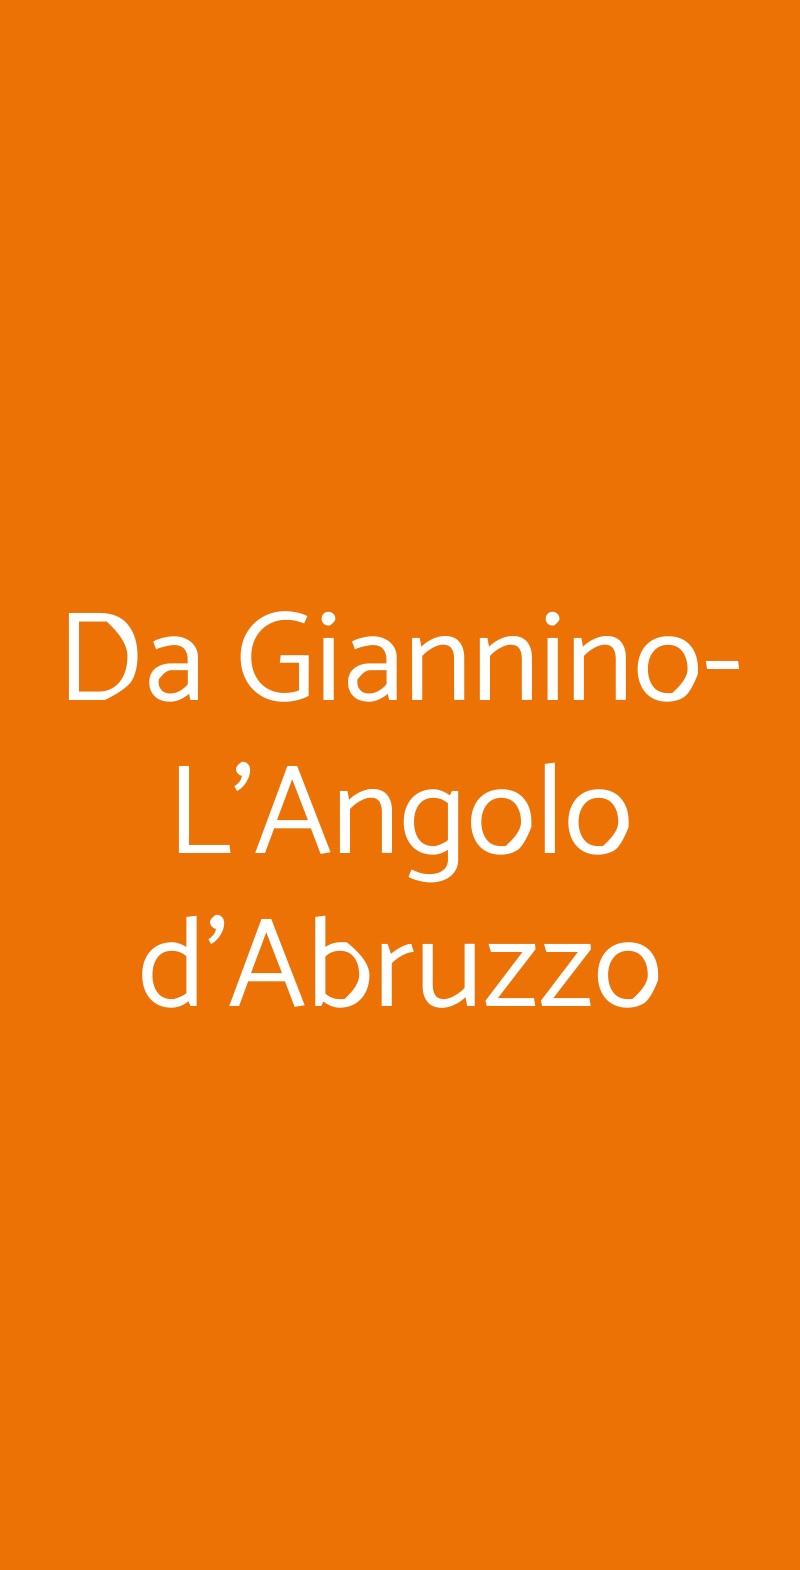 Da Giannino-L'Angolo d'Abruzzo MILANO menù 1 pagina